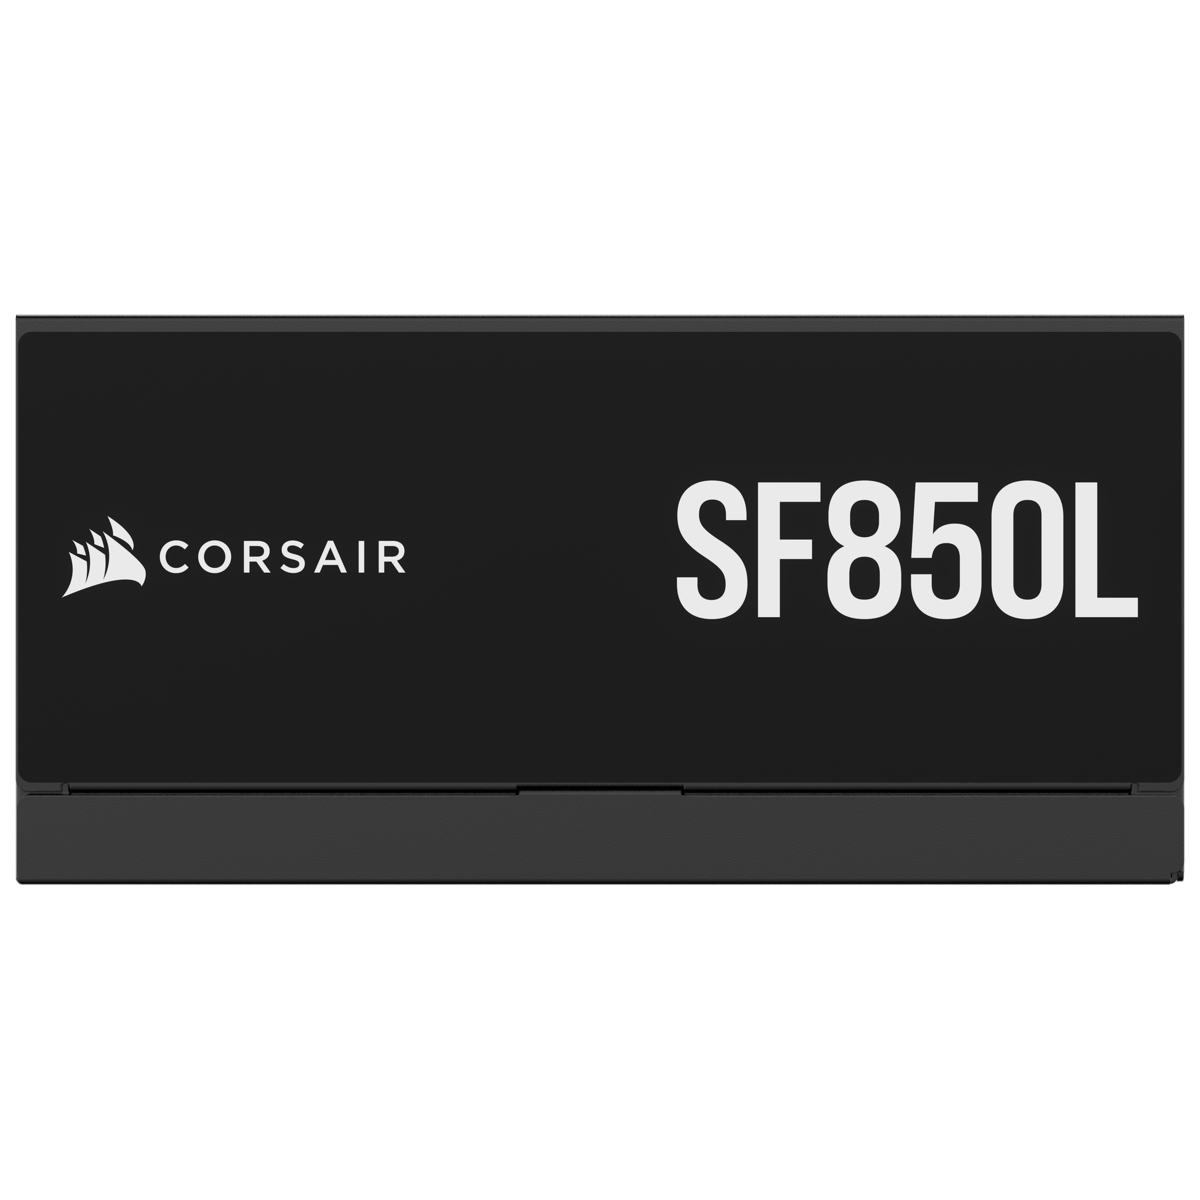 Corsair - Fonte Modular SFX Corsair SF850L